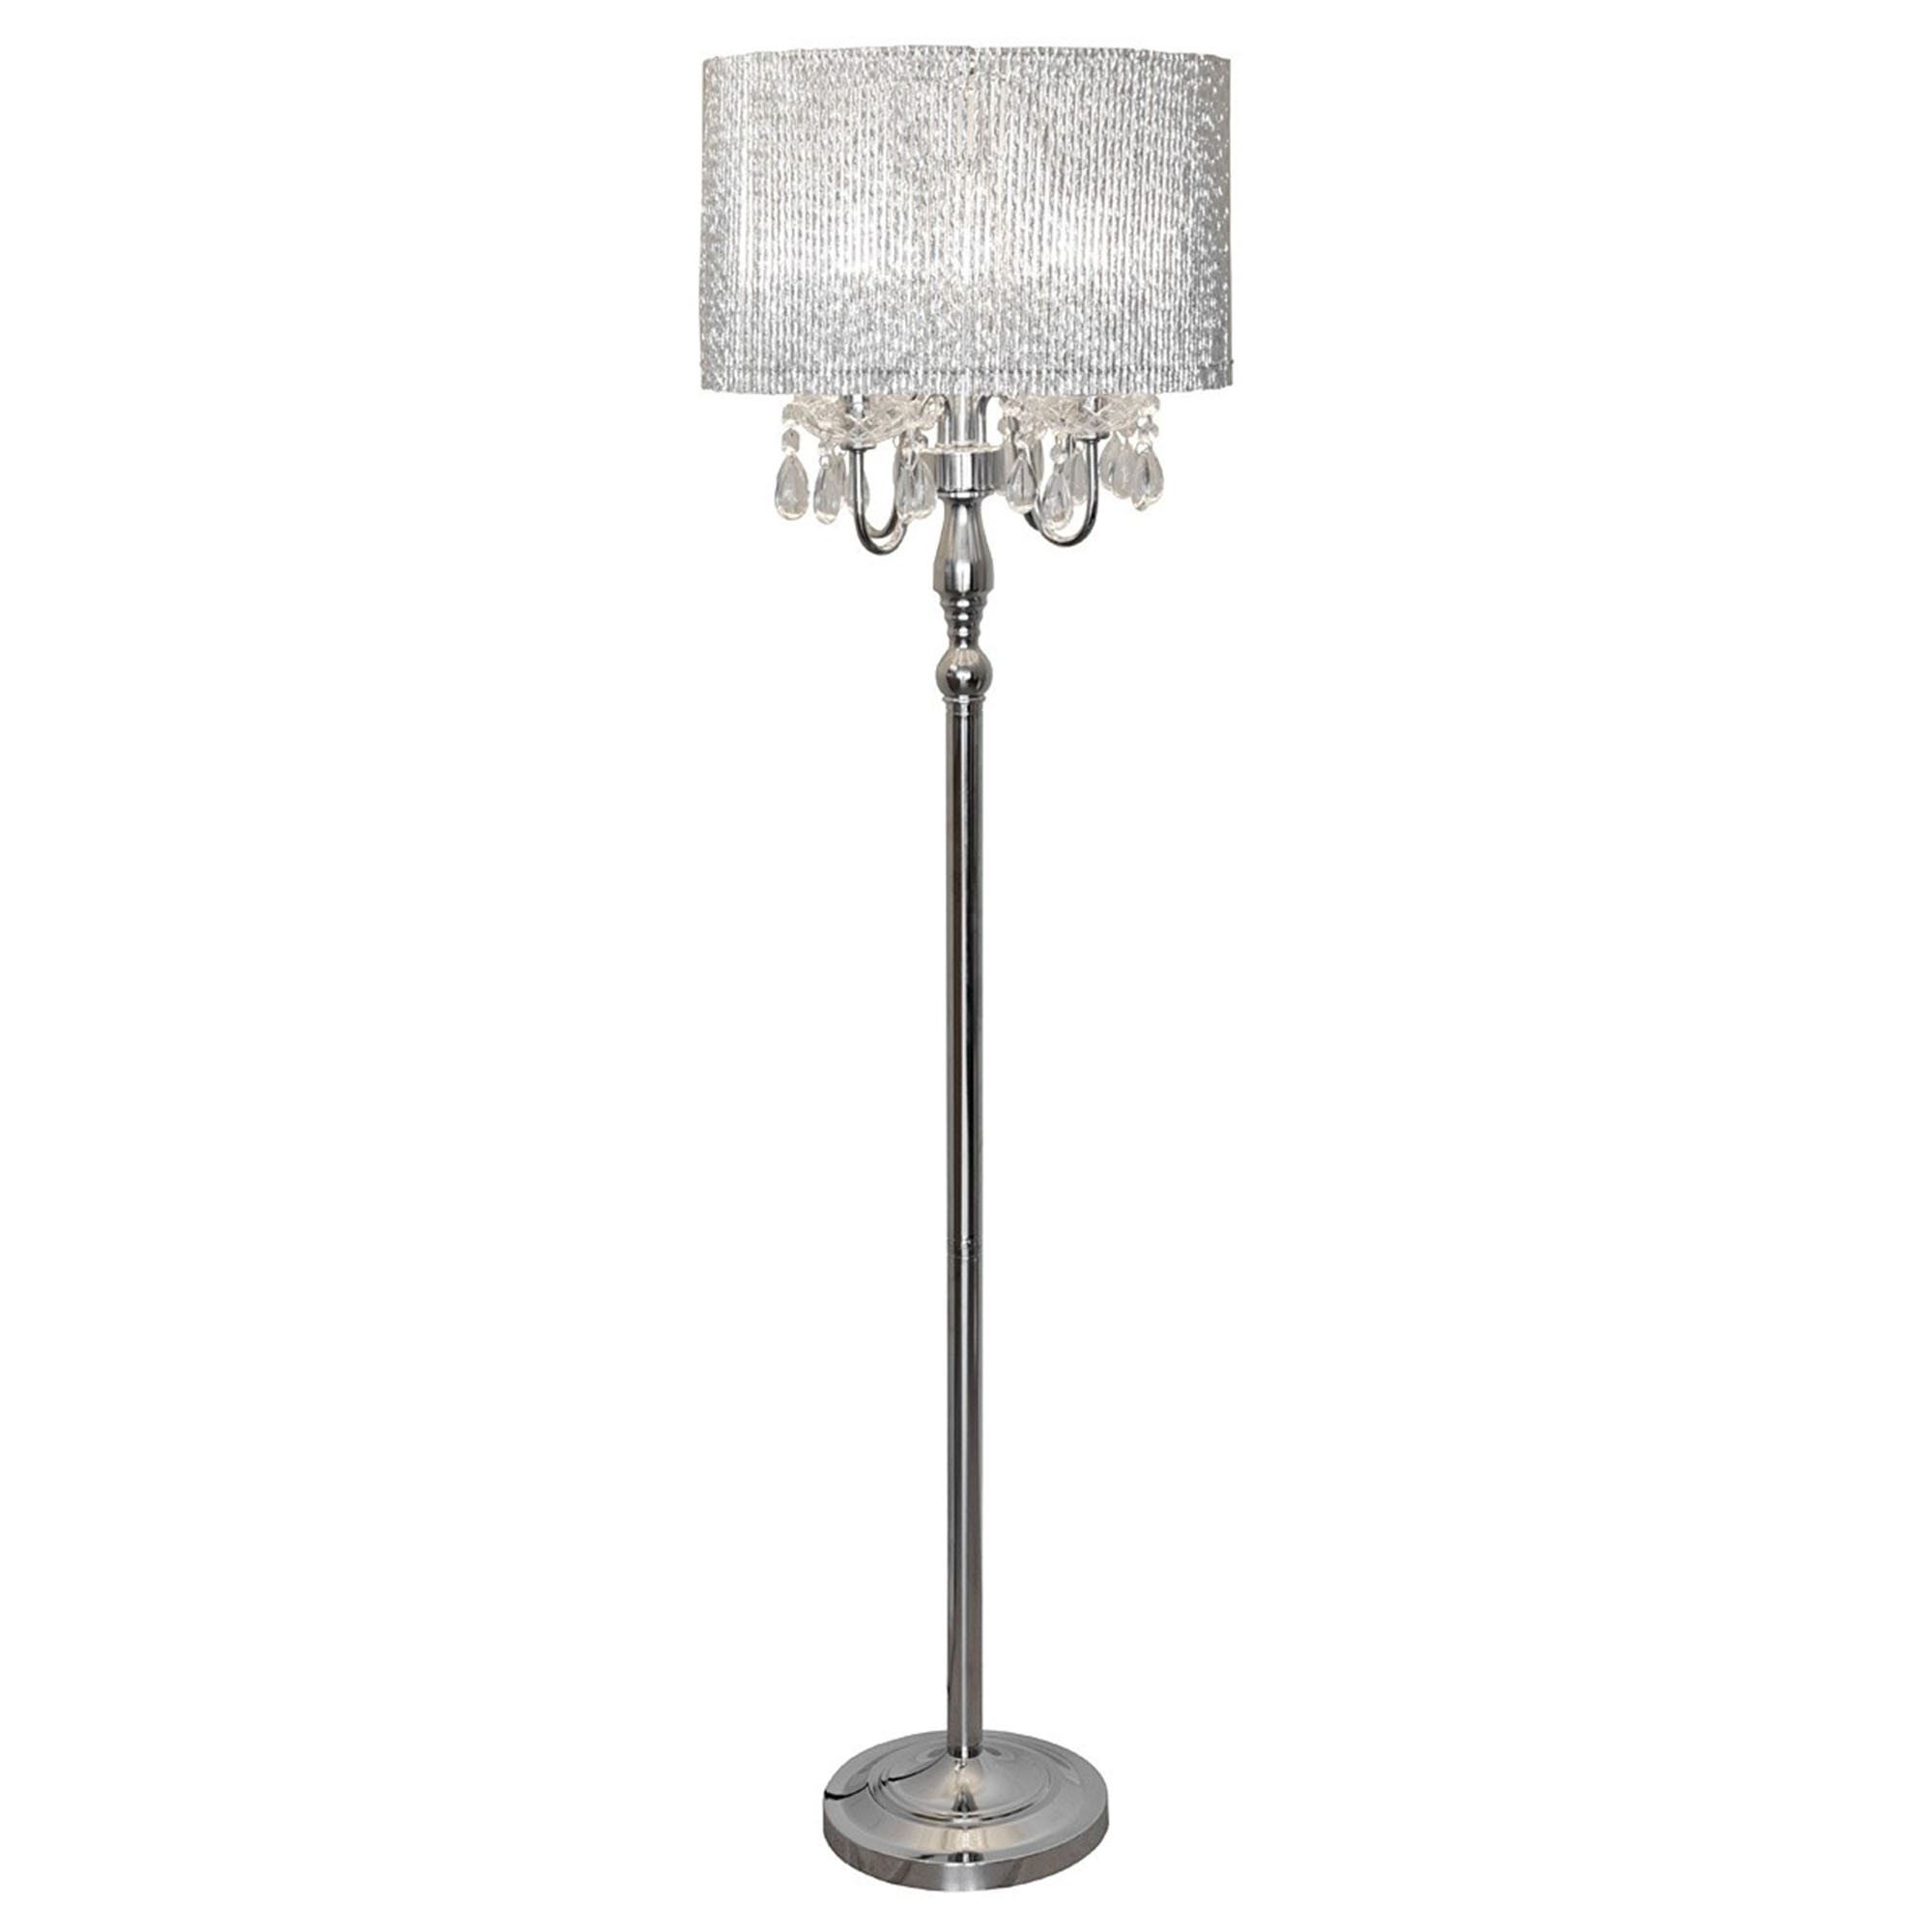 Beaumont Floor Lamp | Contemporary Lighting | Floorstanding Lamps Inside Silver Floor Lamps (View 2 of 20)